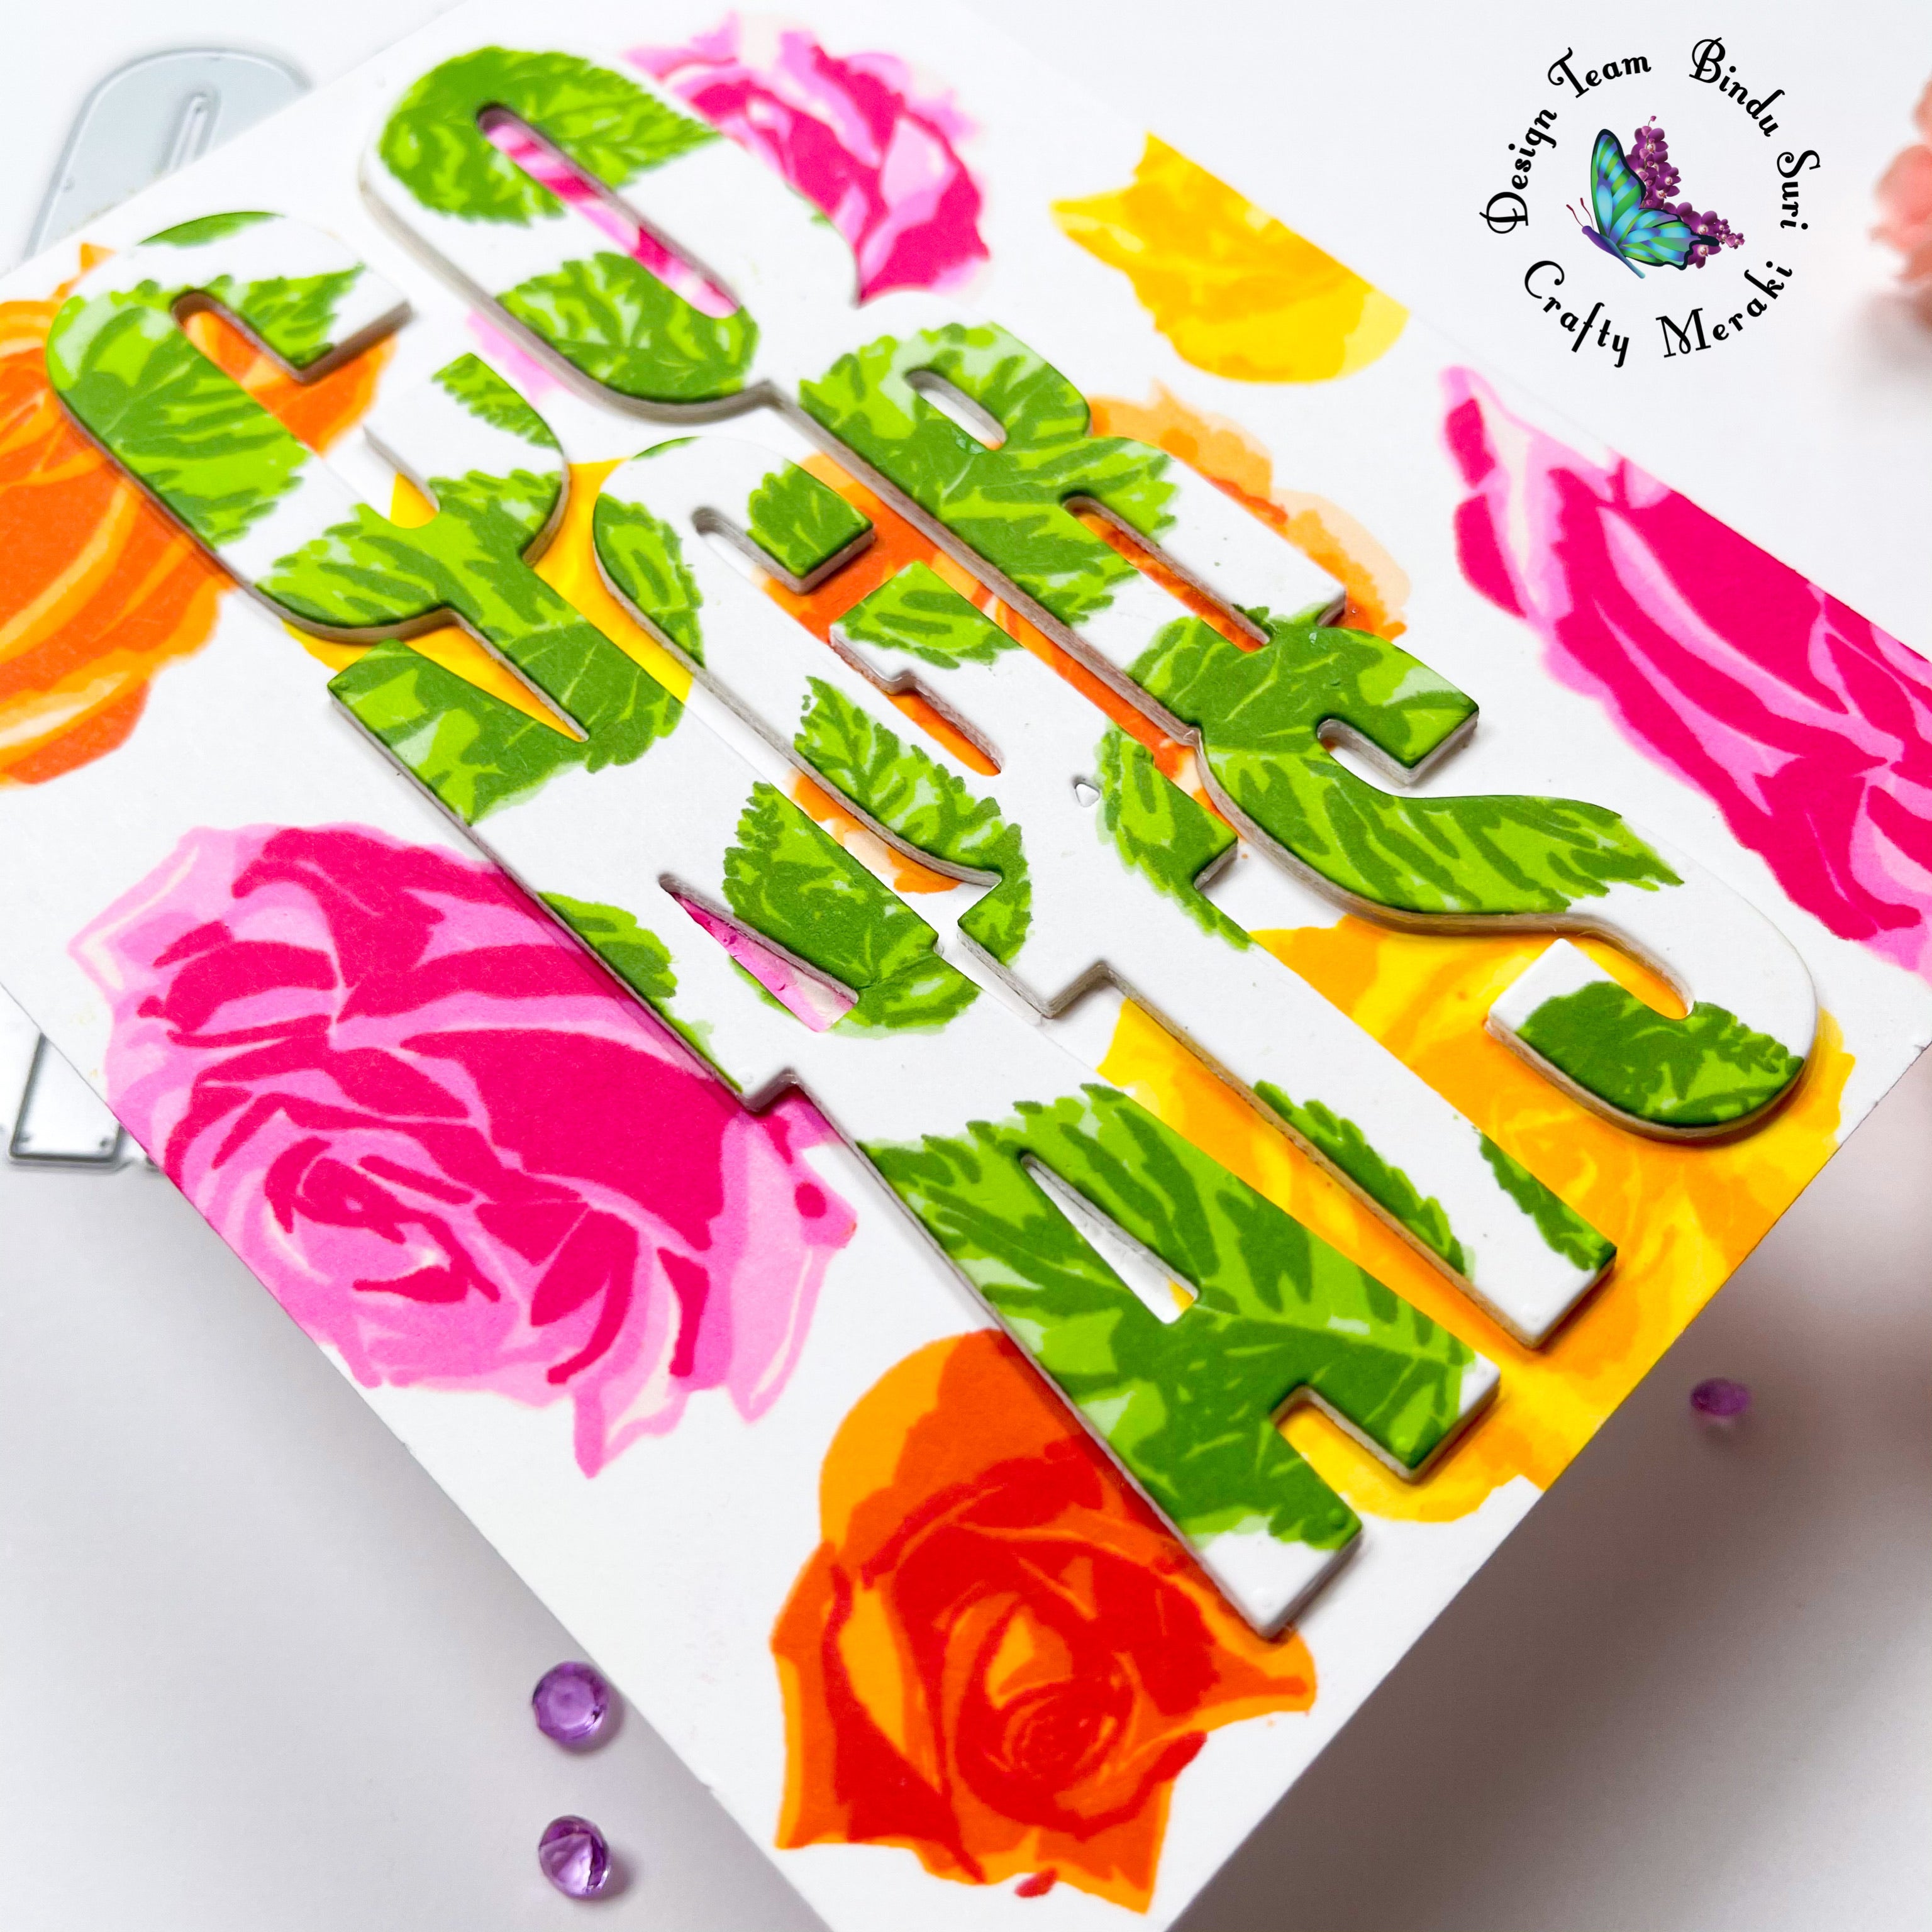 Crafty Meraki Rose Garden Stamp set - Crafty Meraki